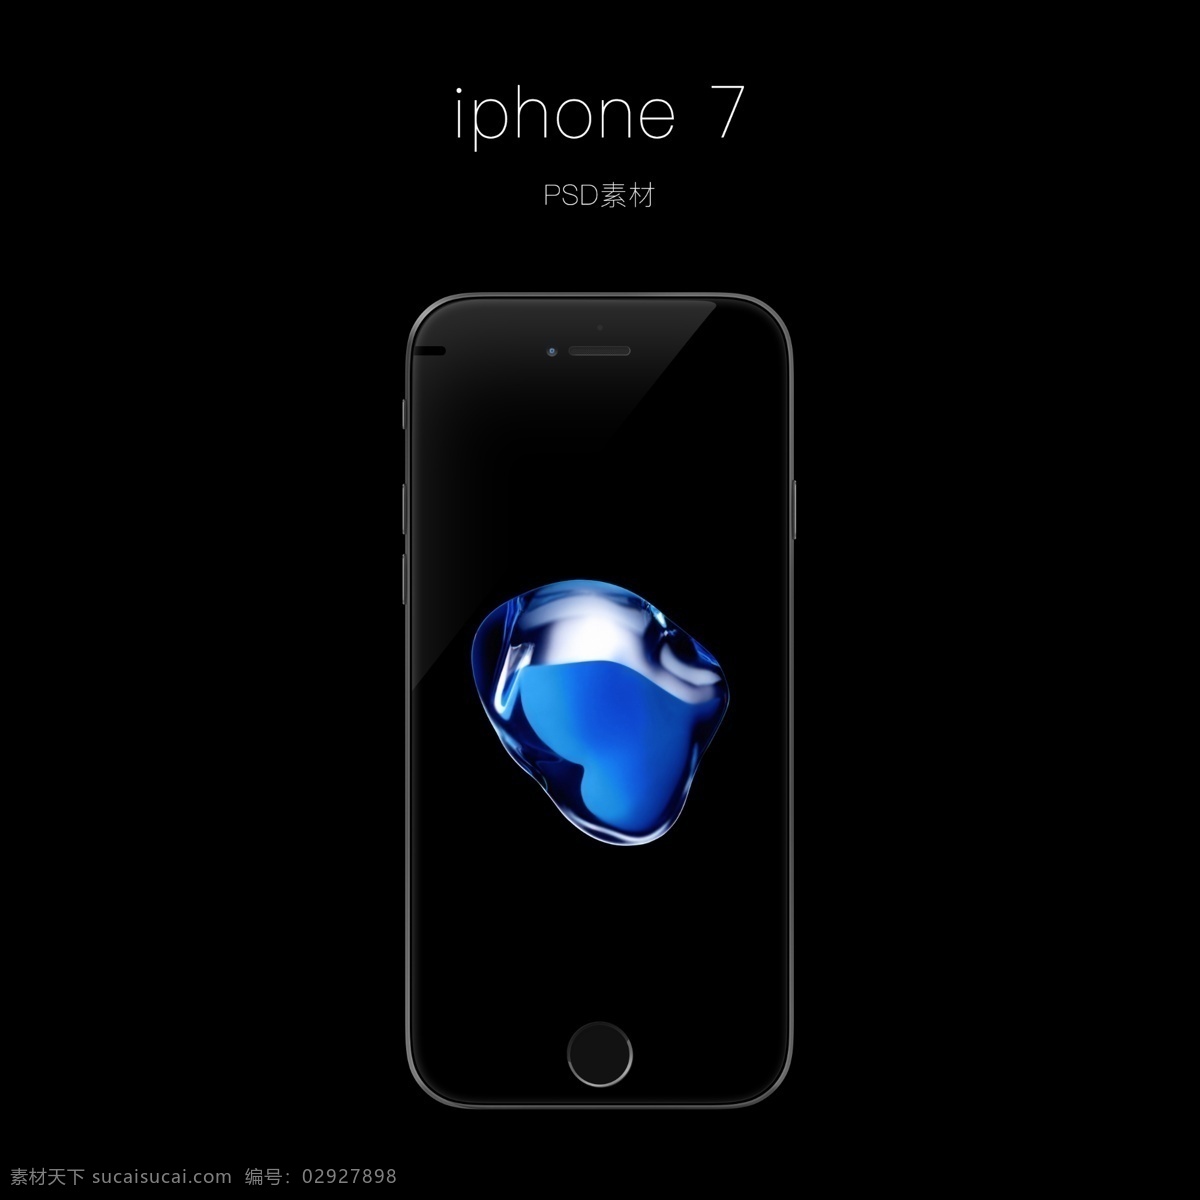 iphone 7苹果手机 iphone7 苹果手机 苹果7 分层 psd素材 数码产品展示 样机